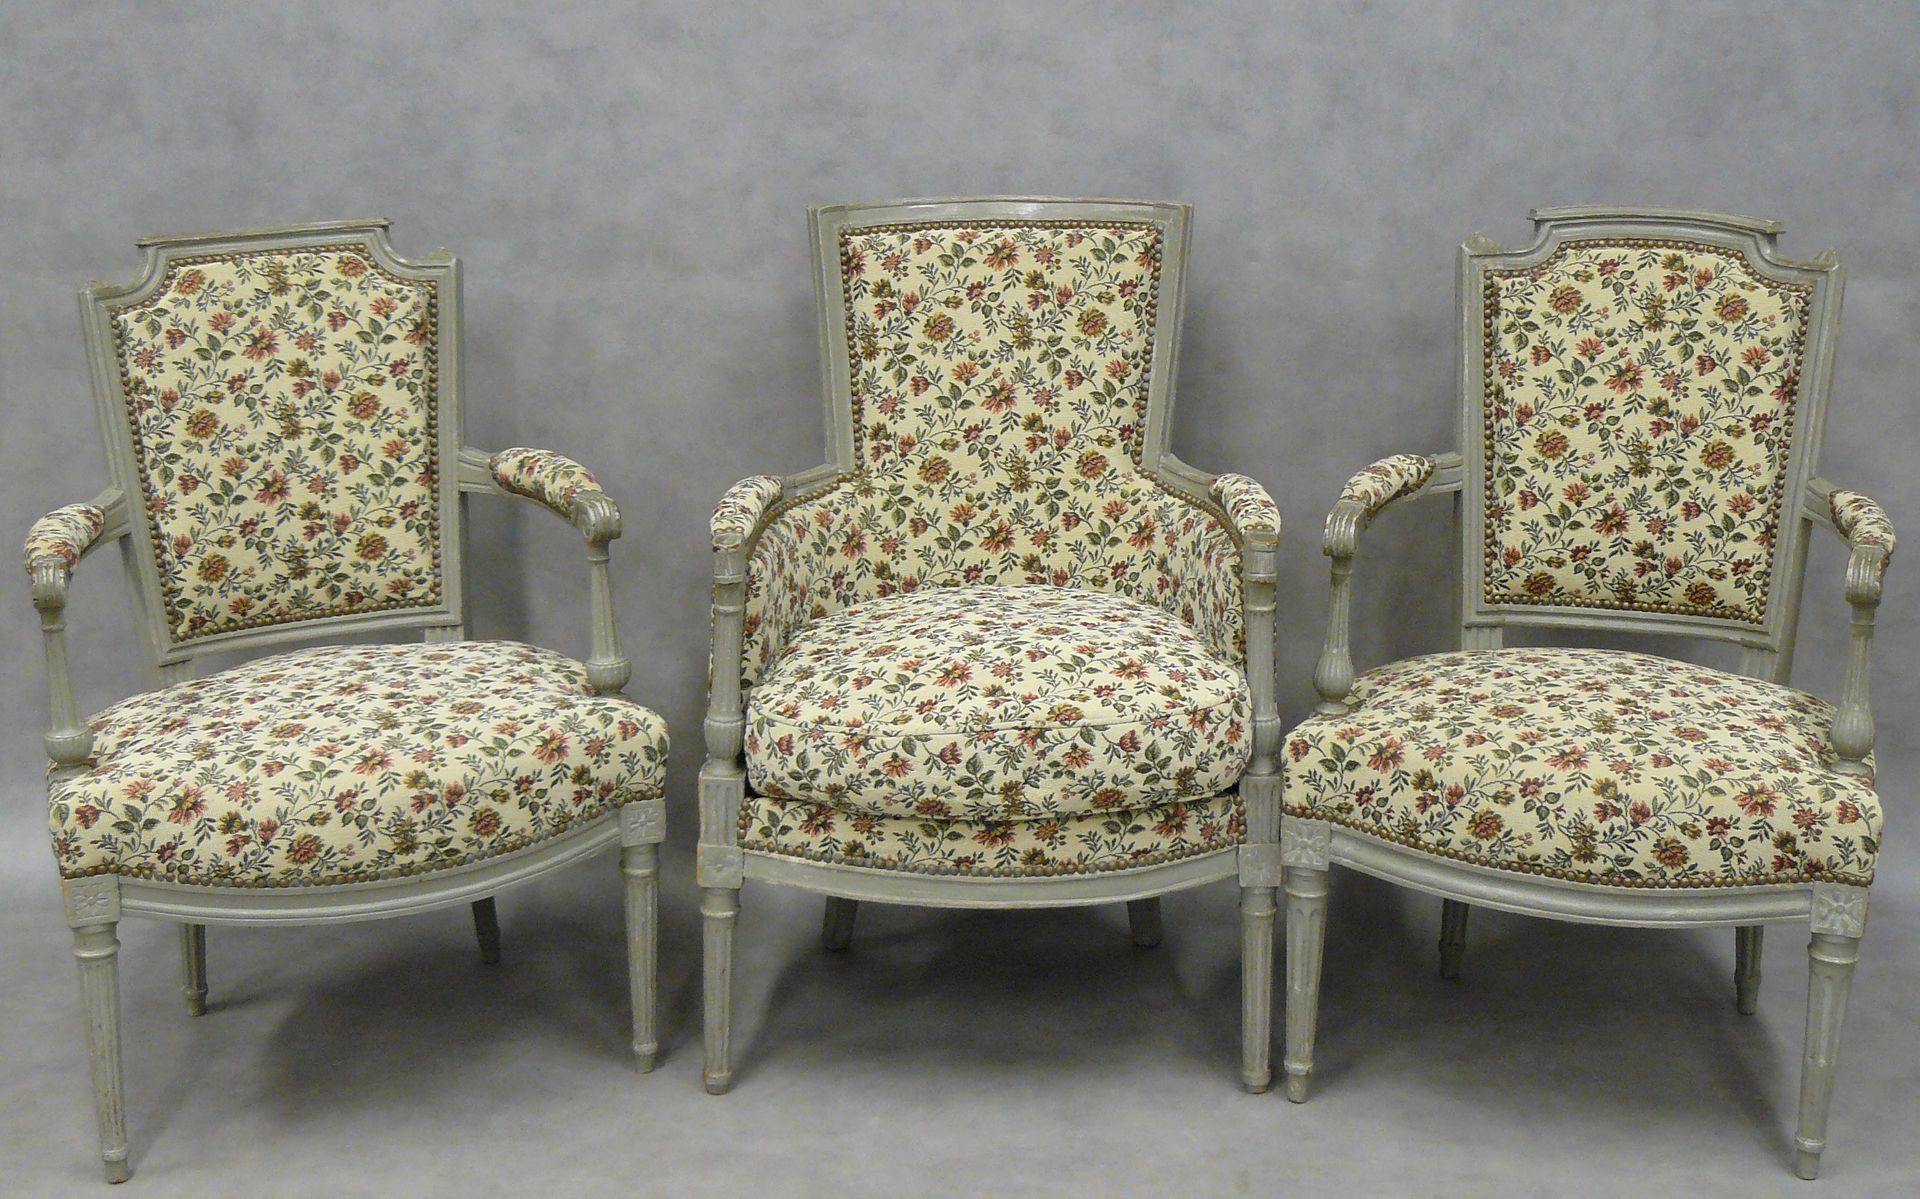 Null 一把路易十六风格的灰色漆面扶手椅和两把卡布里特扶手椅，花卉挂毯装饰